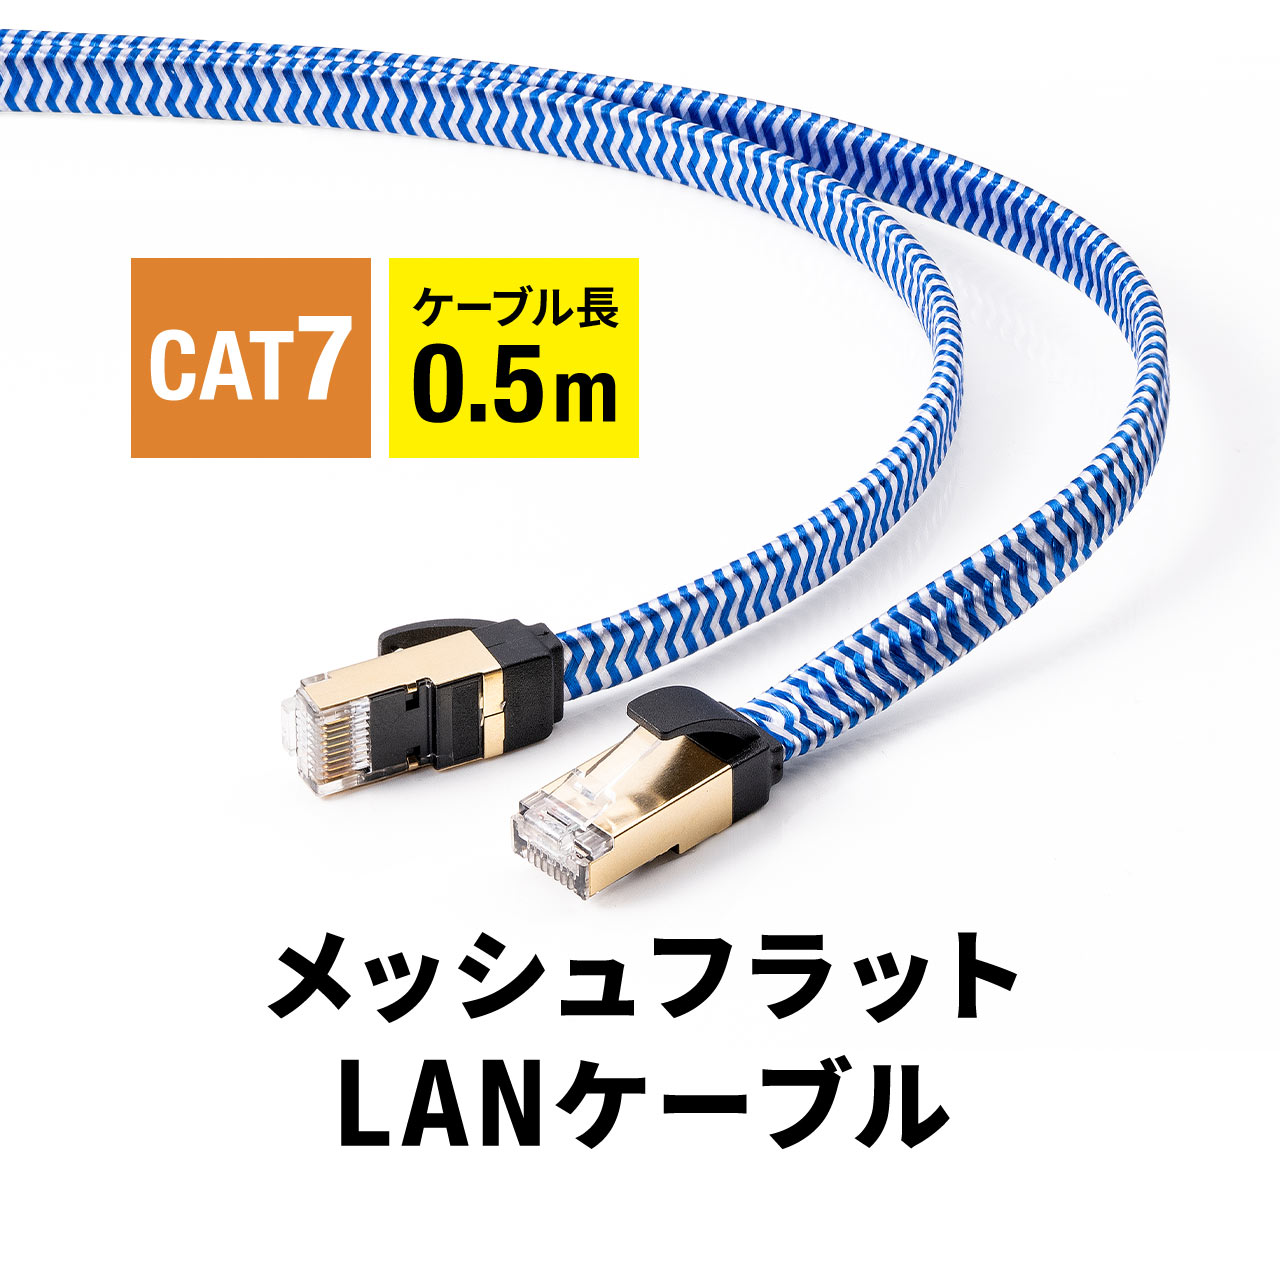 LANケーブル CAT7 カテゴリ7 カテ7 ランケーブル フラット メッシュ 丈夫 断線しにくい スリム 高速 伝送速度10Gbps ツメ折れ防止カバー より線 50cm